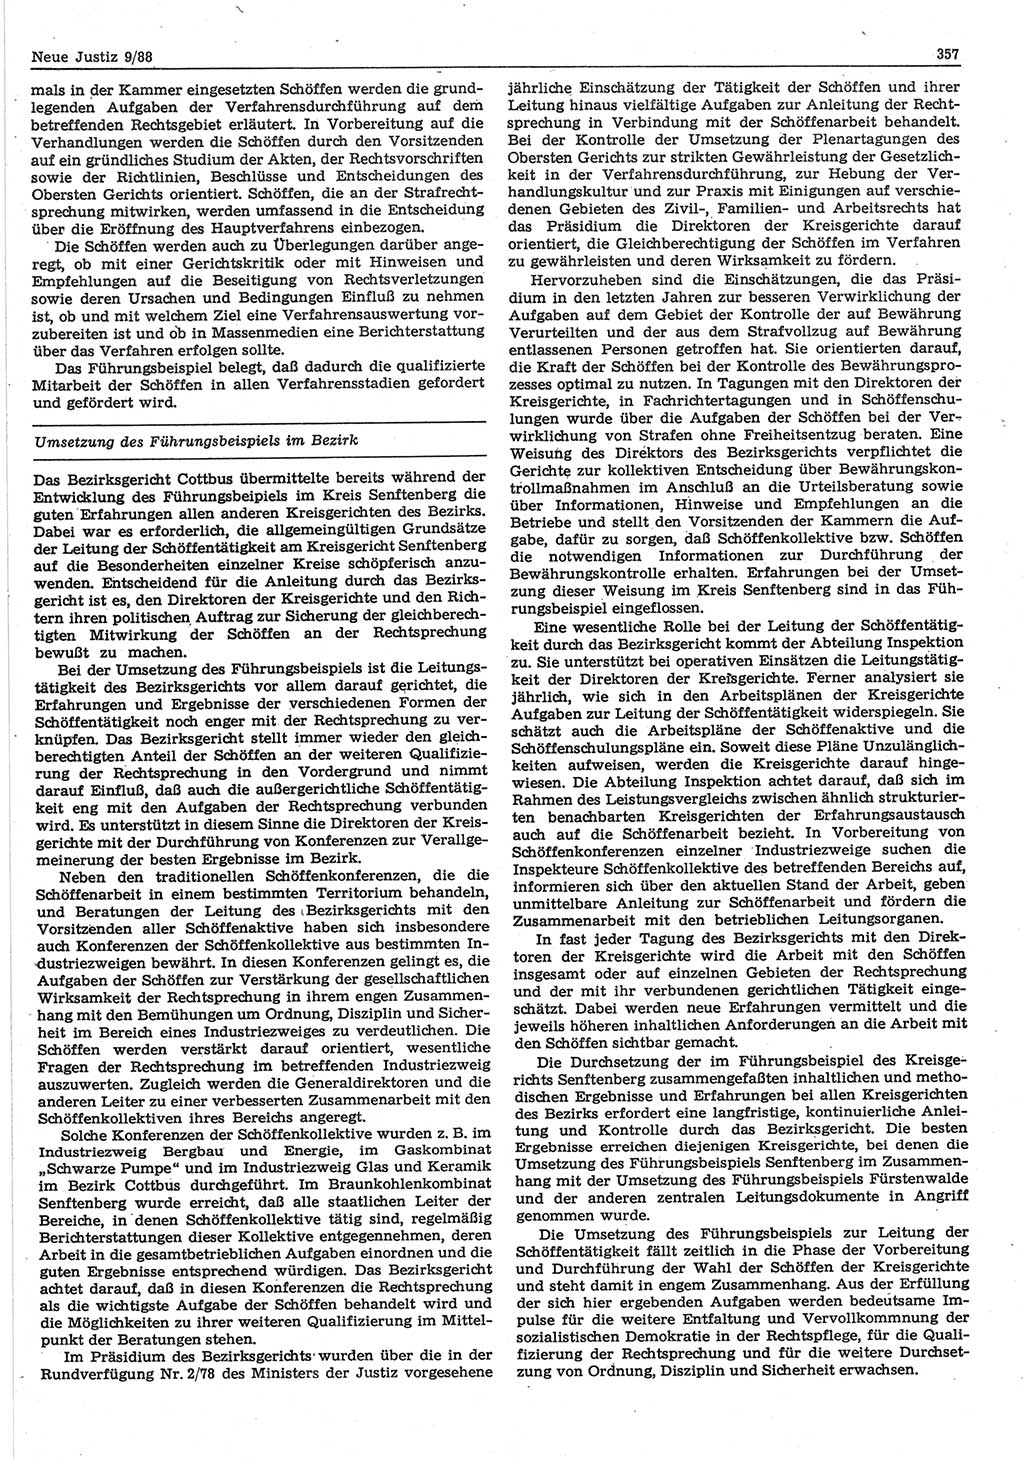 Neue Justiz (NJ), Zeitschrift für sozialistisches Recht und Gesetzlichkeit [Deutsche Demokratische Republik (DDR)], 42. Jahrgang 1988, Seite 357 (NJ DDR 1988, S. 357)